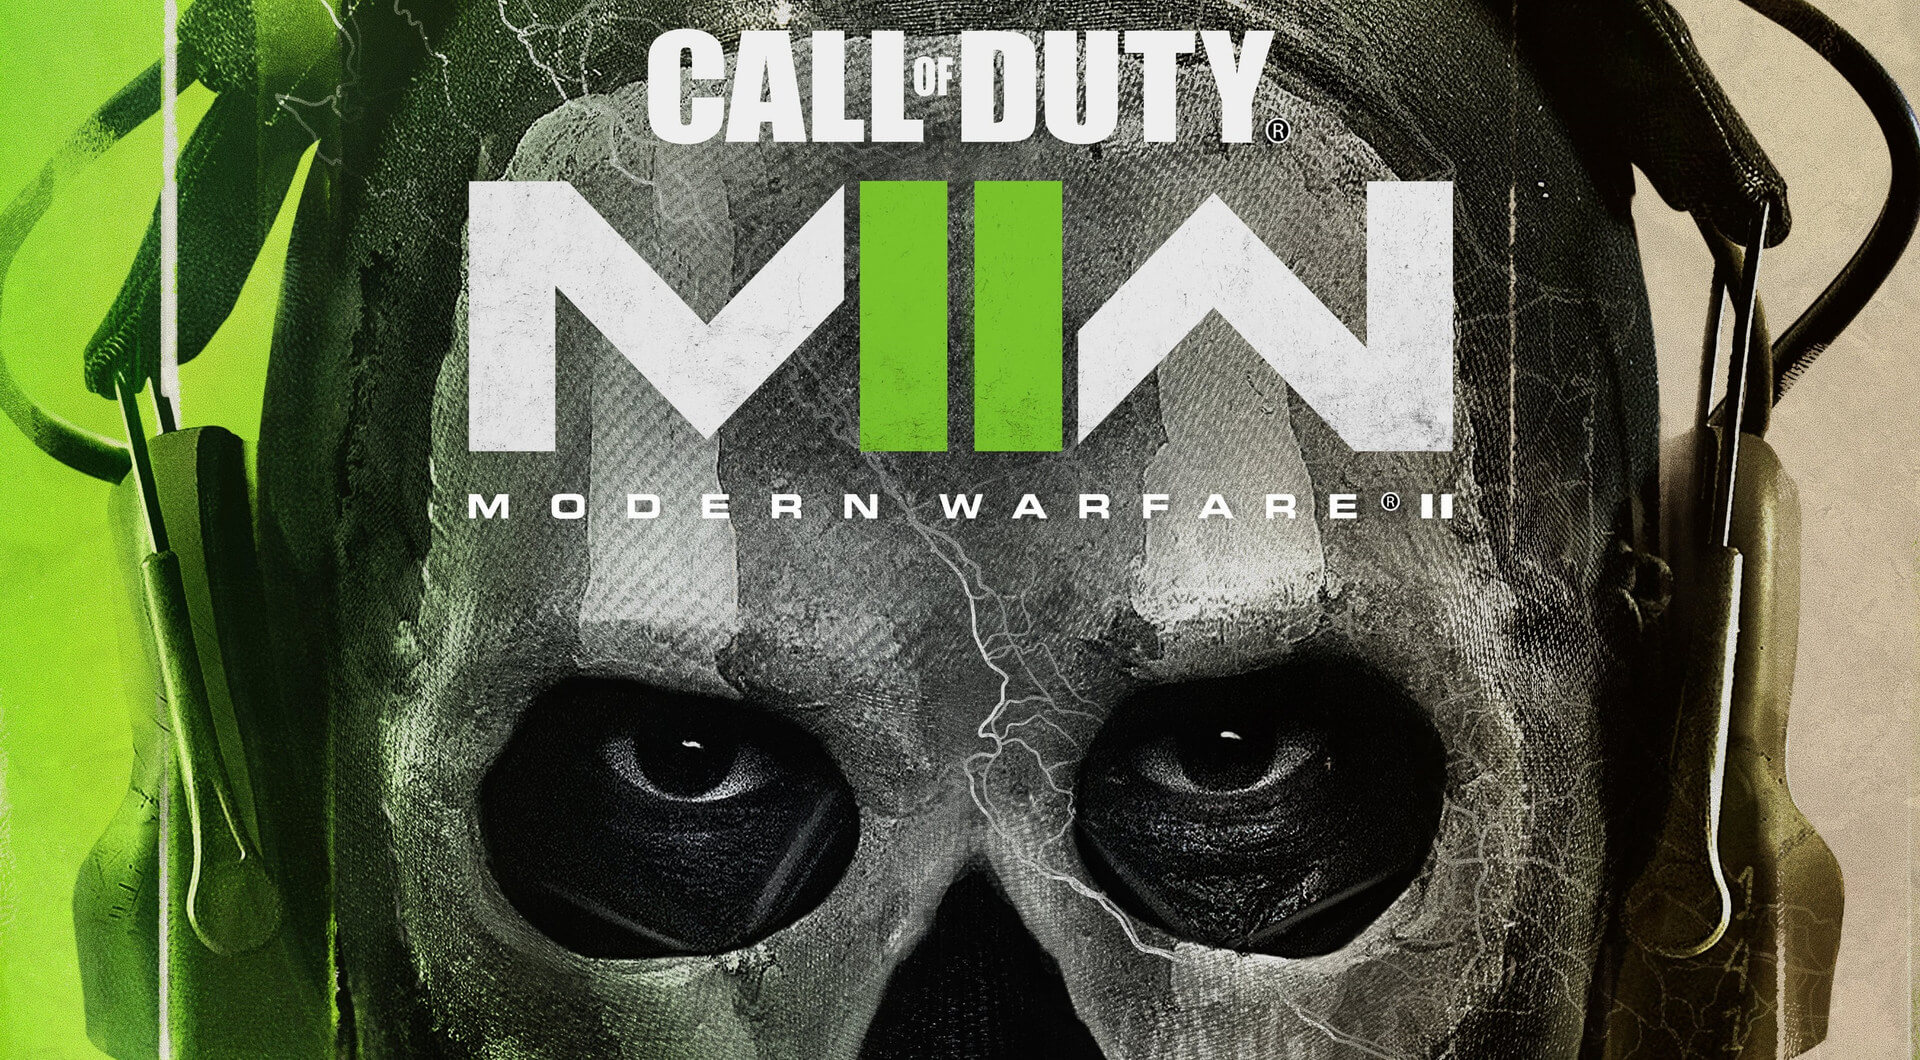 Modern Warfare 2 On PC in 2023 😍😍 